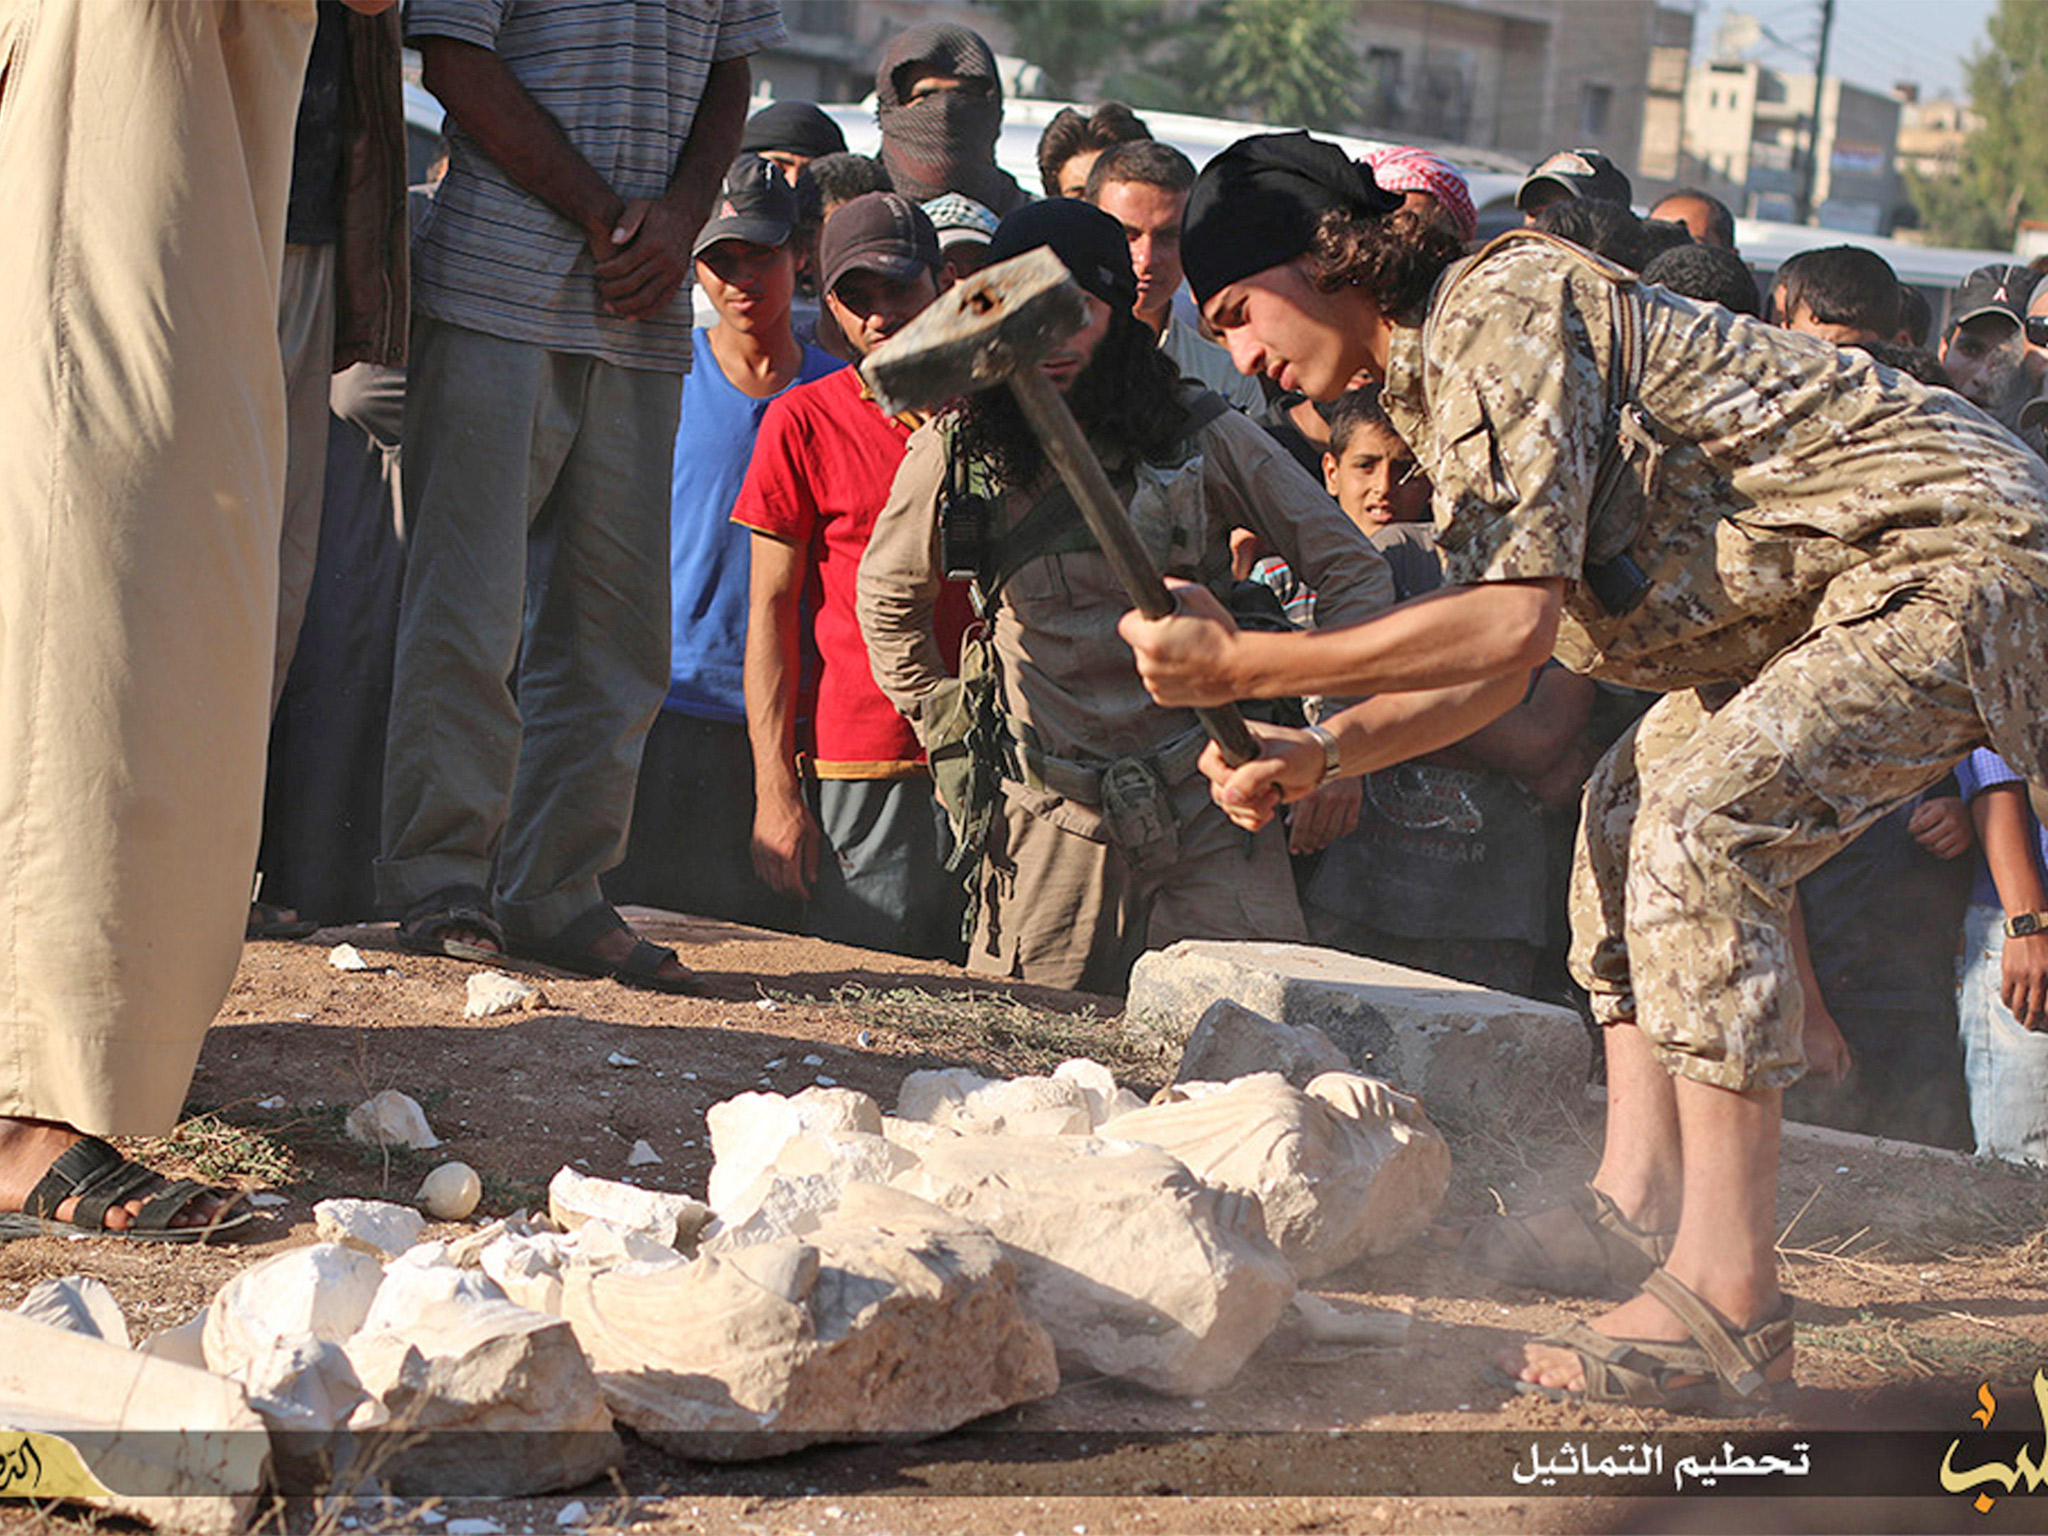 Член ИГИЛ  кувалдой уничтожает древнюю скульптуру